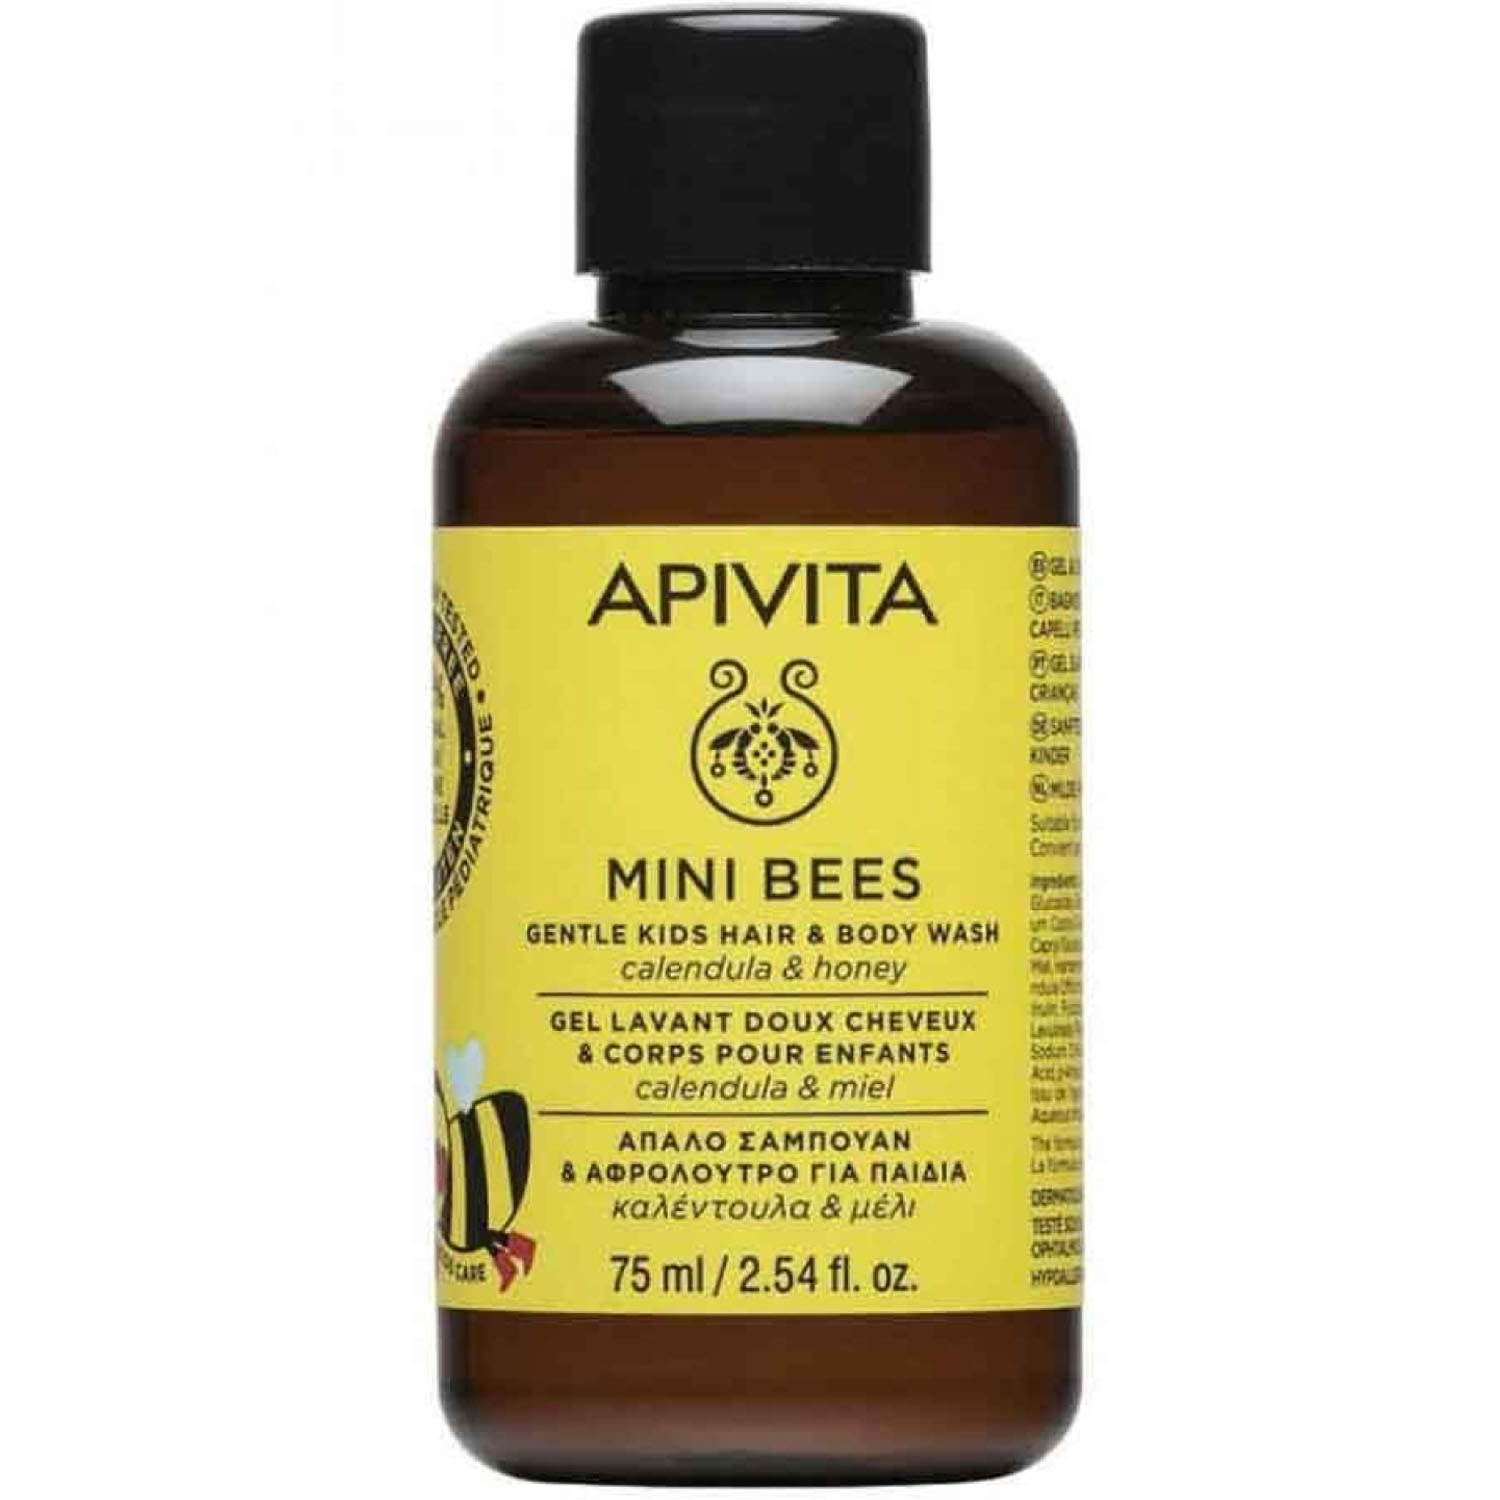 

Apivita Детский нежный очищающий гель для тела и волос с Календулой и Мёдом, 75 мл (Apivita, Mini Bees), Mini Bees